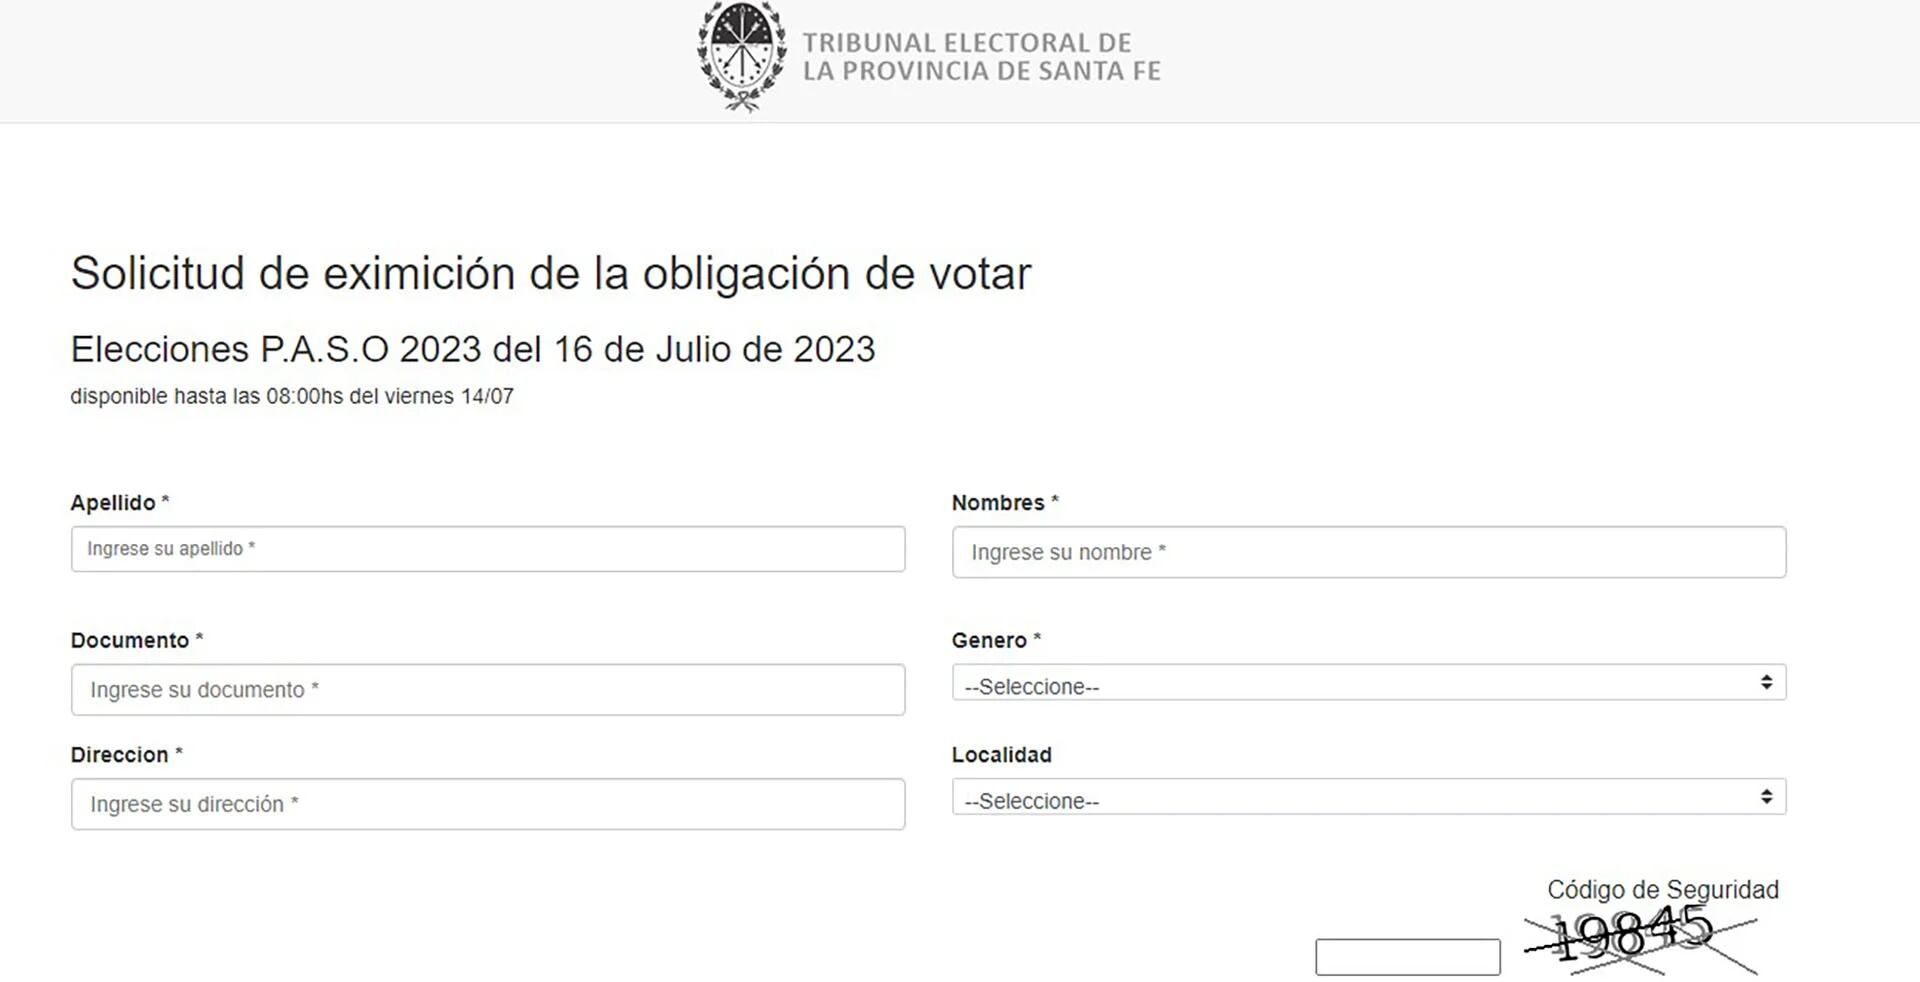 El ciudadano que no concurra a votar debe tramitar el certificado en el sitio web de "Justificación de la no emisión del voto" del Tribunal Electoral provincial